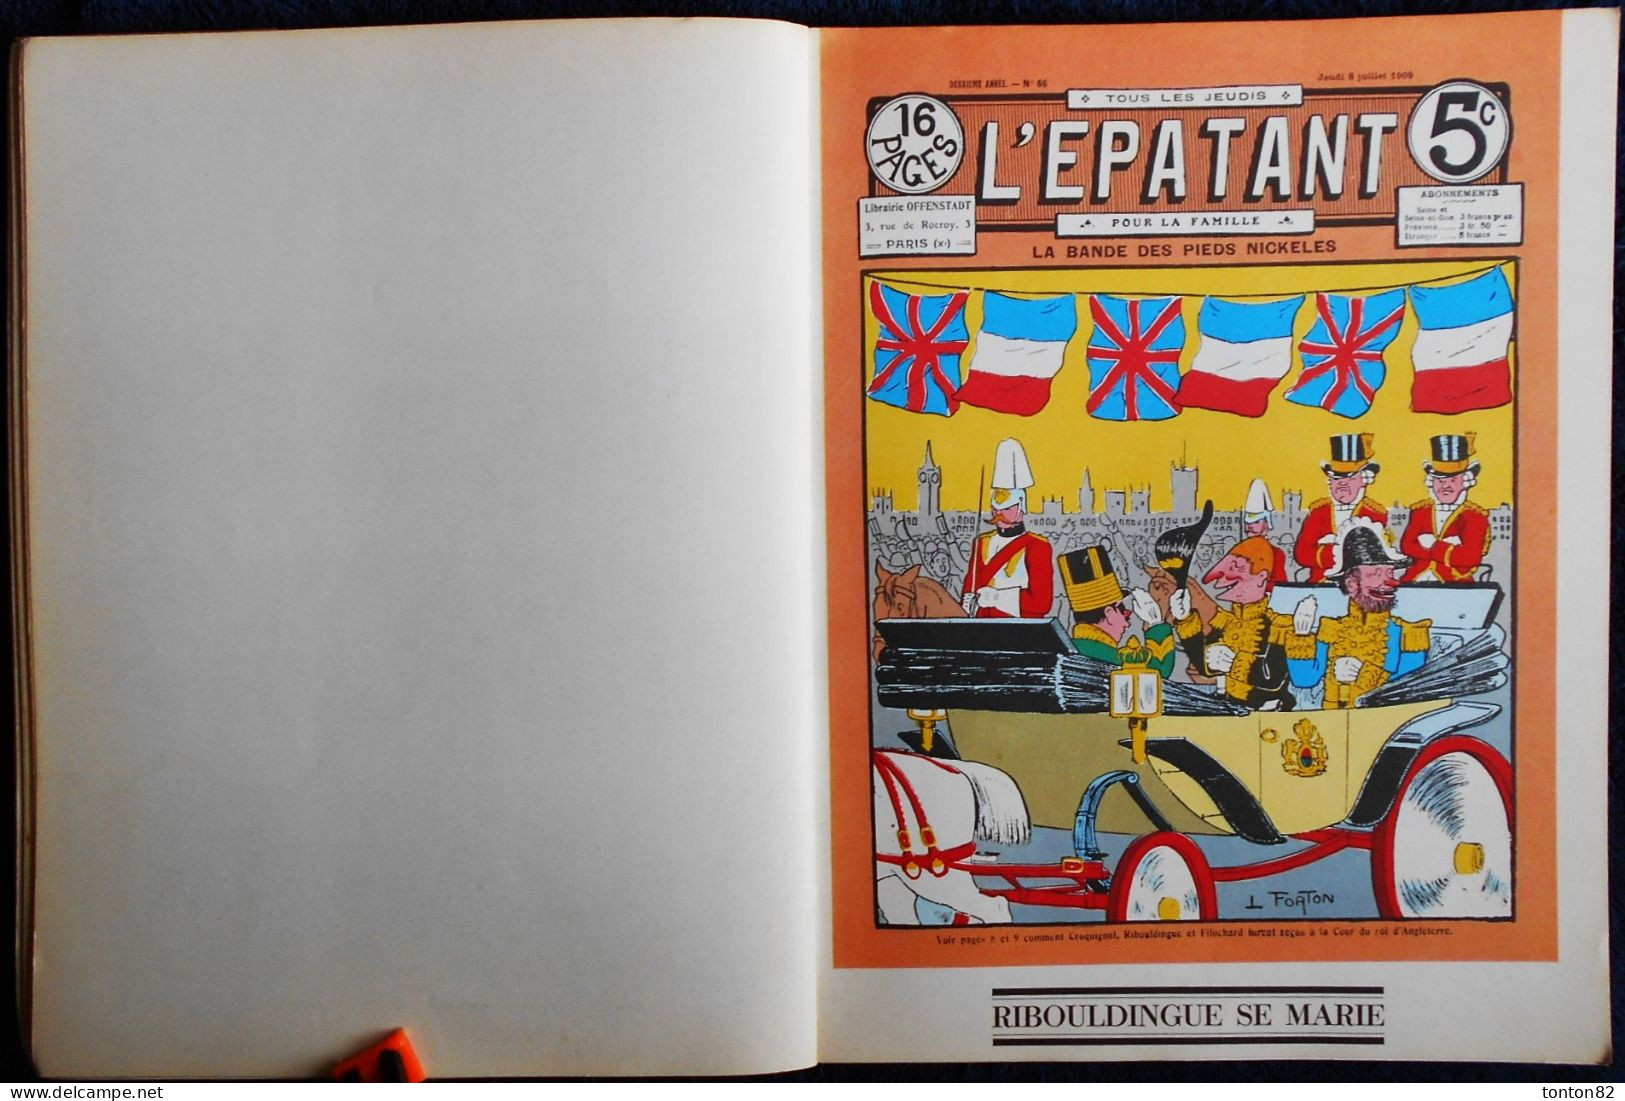 La Bande des Pieds-Nickelés - Aventures parues dans L' ÉPATANT - 1908 / 1912 - Éditions Henri Veyrier -  (1975 ) .